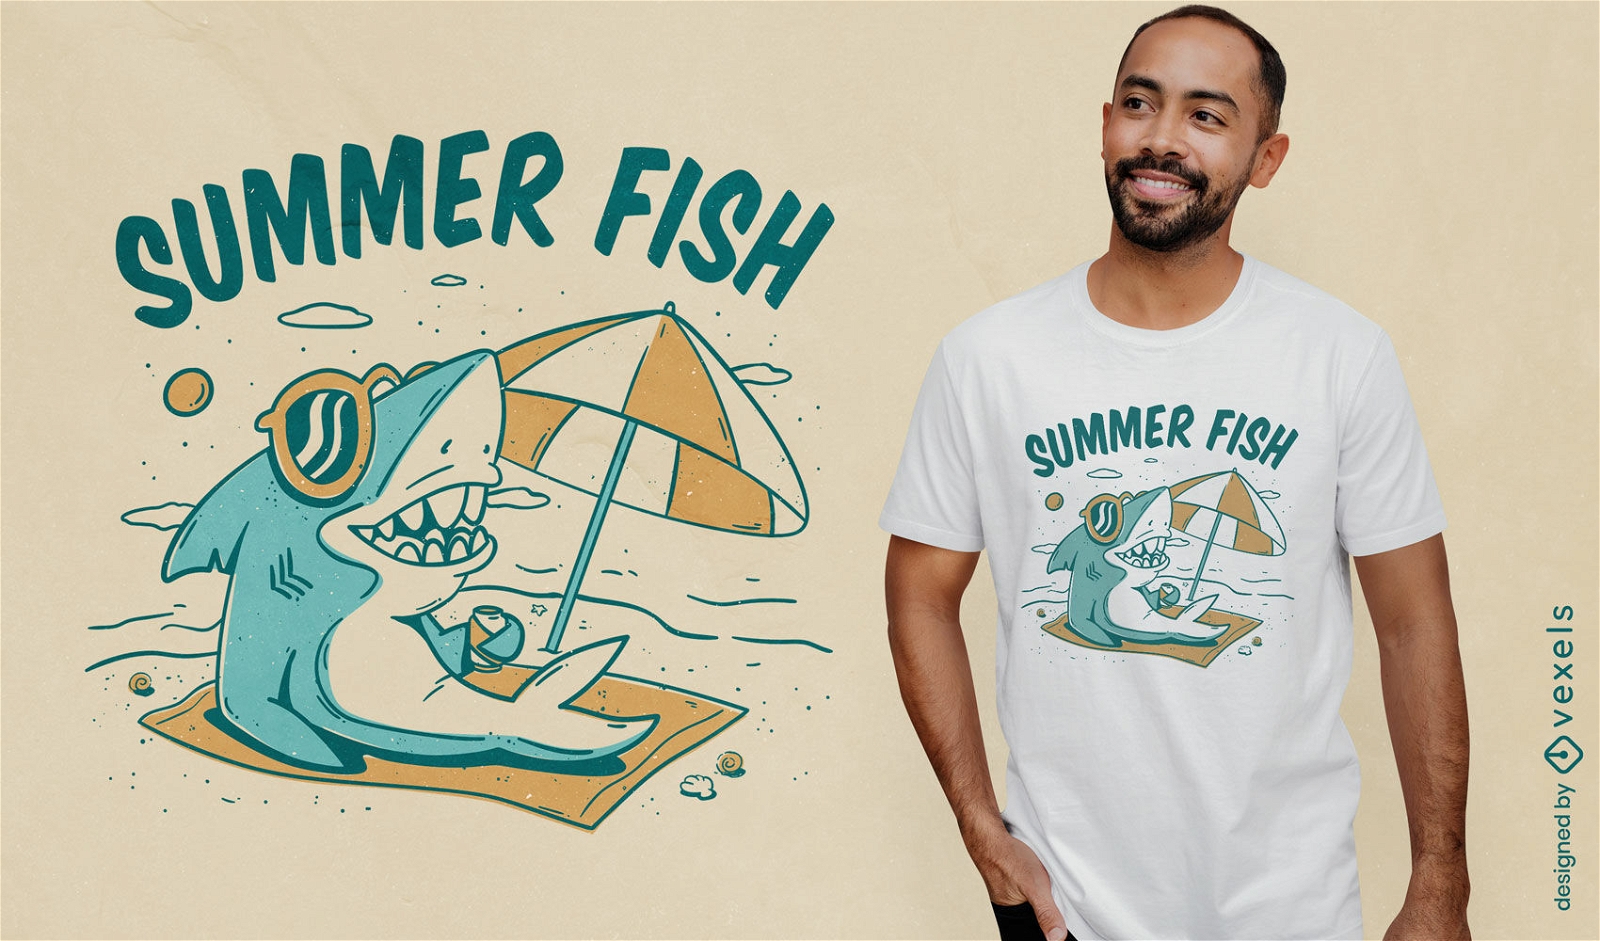 Summer fish shark t-shirt design